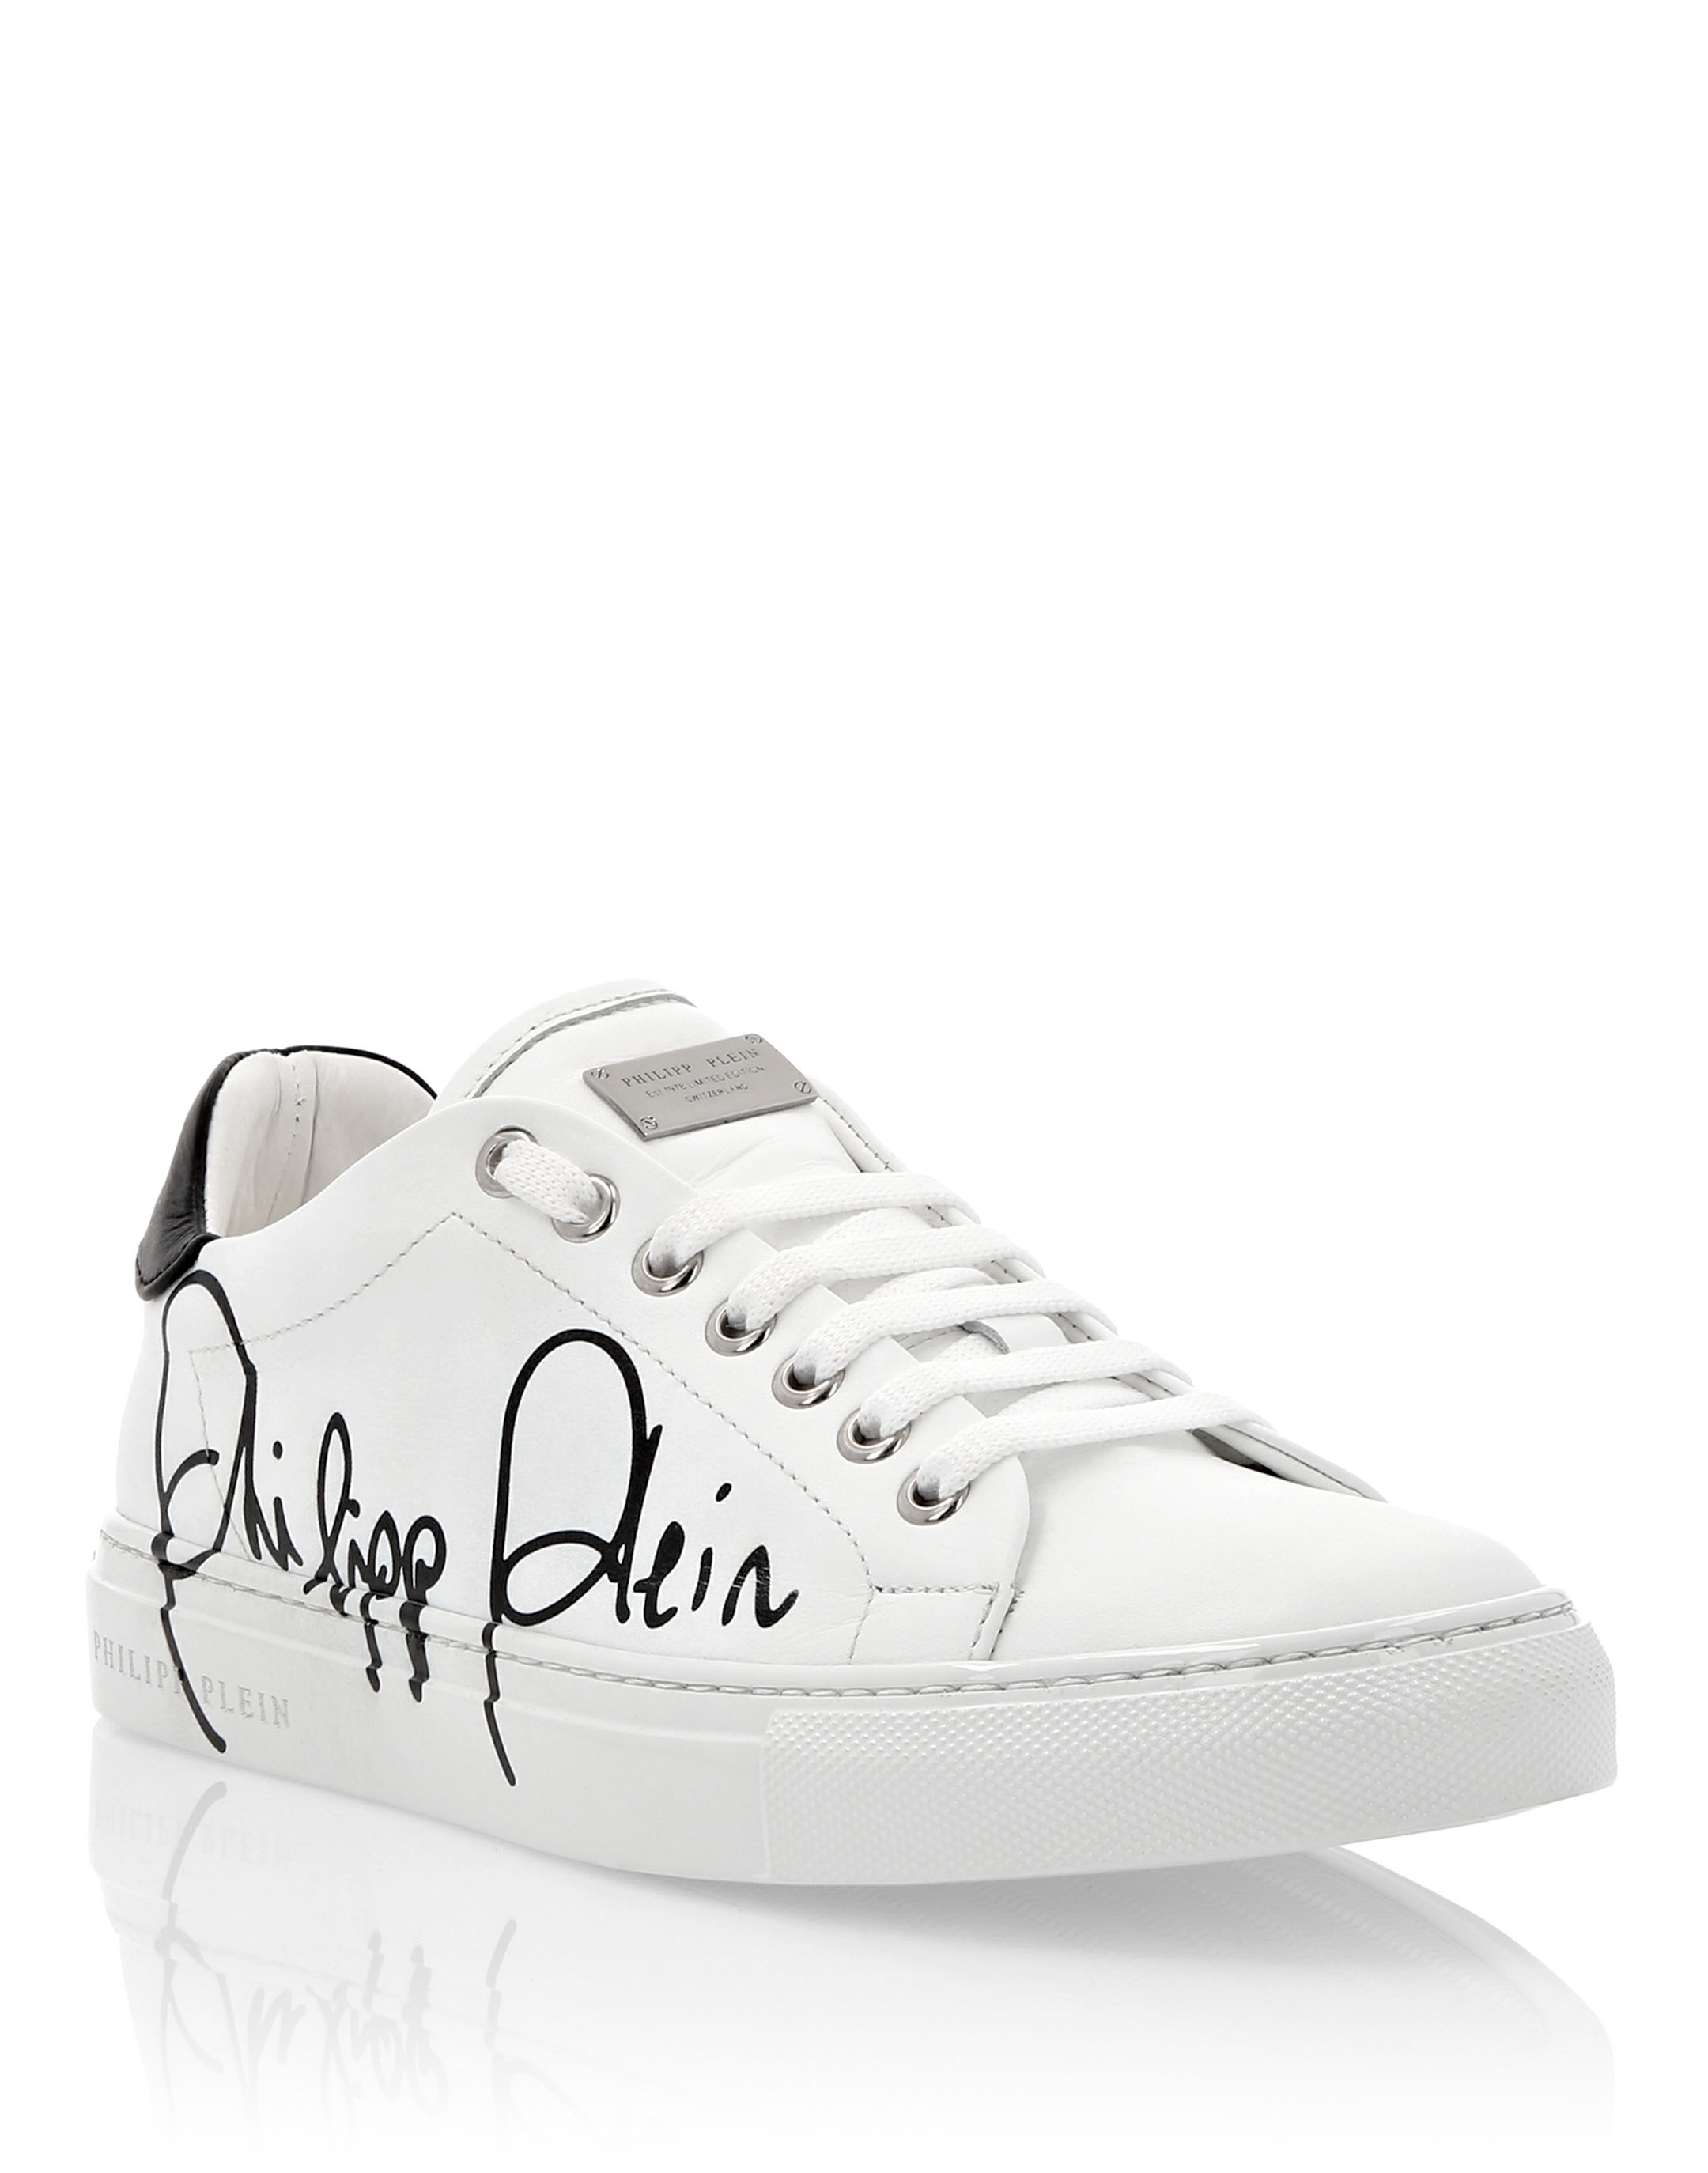 philipp plein sneakers white